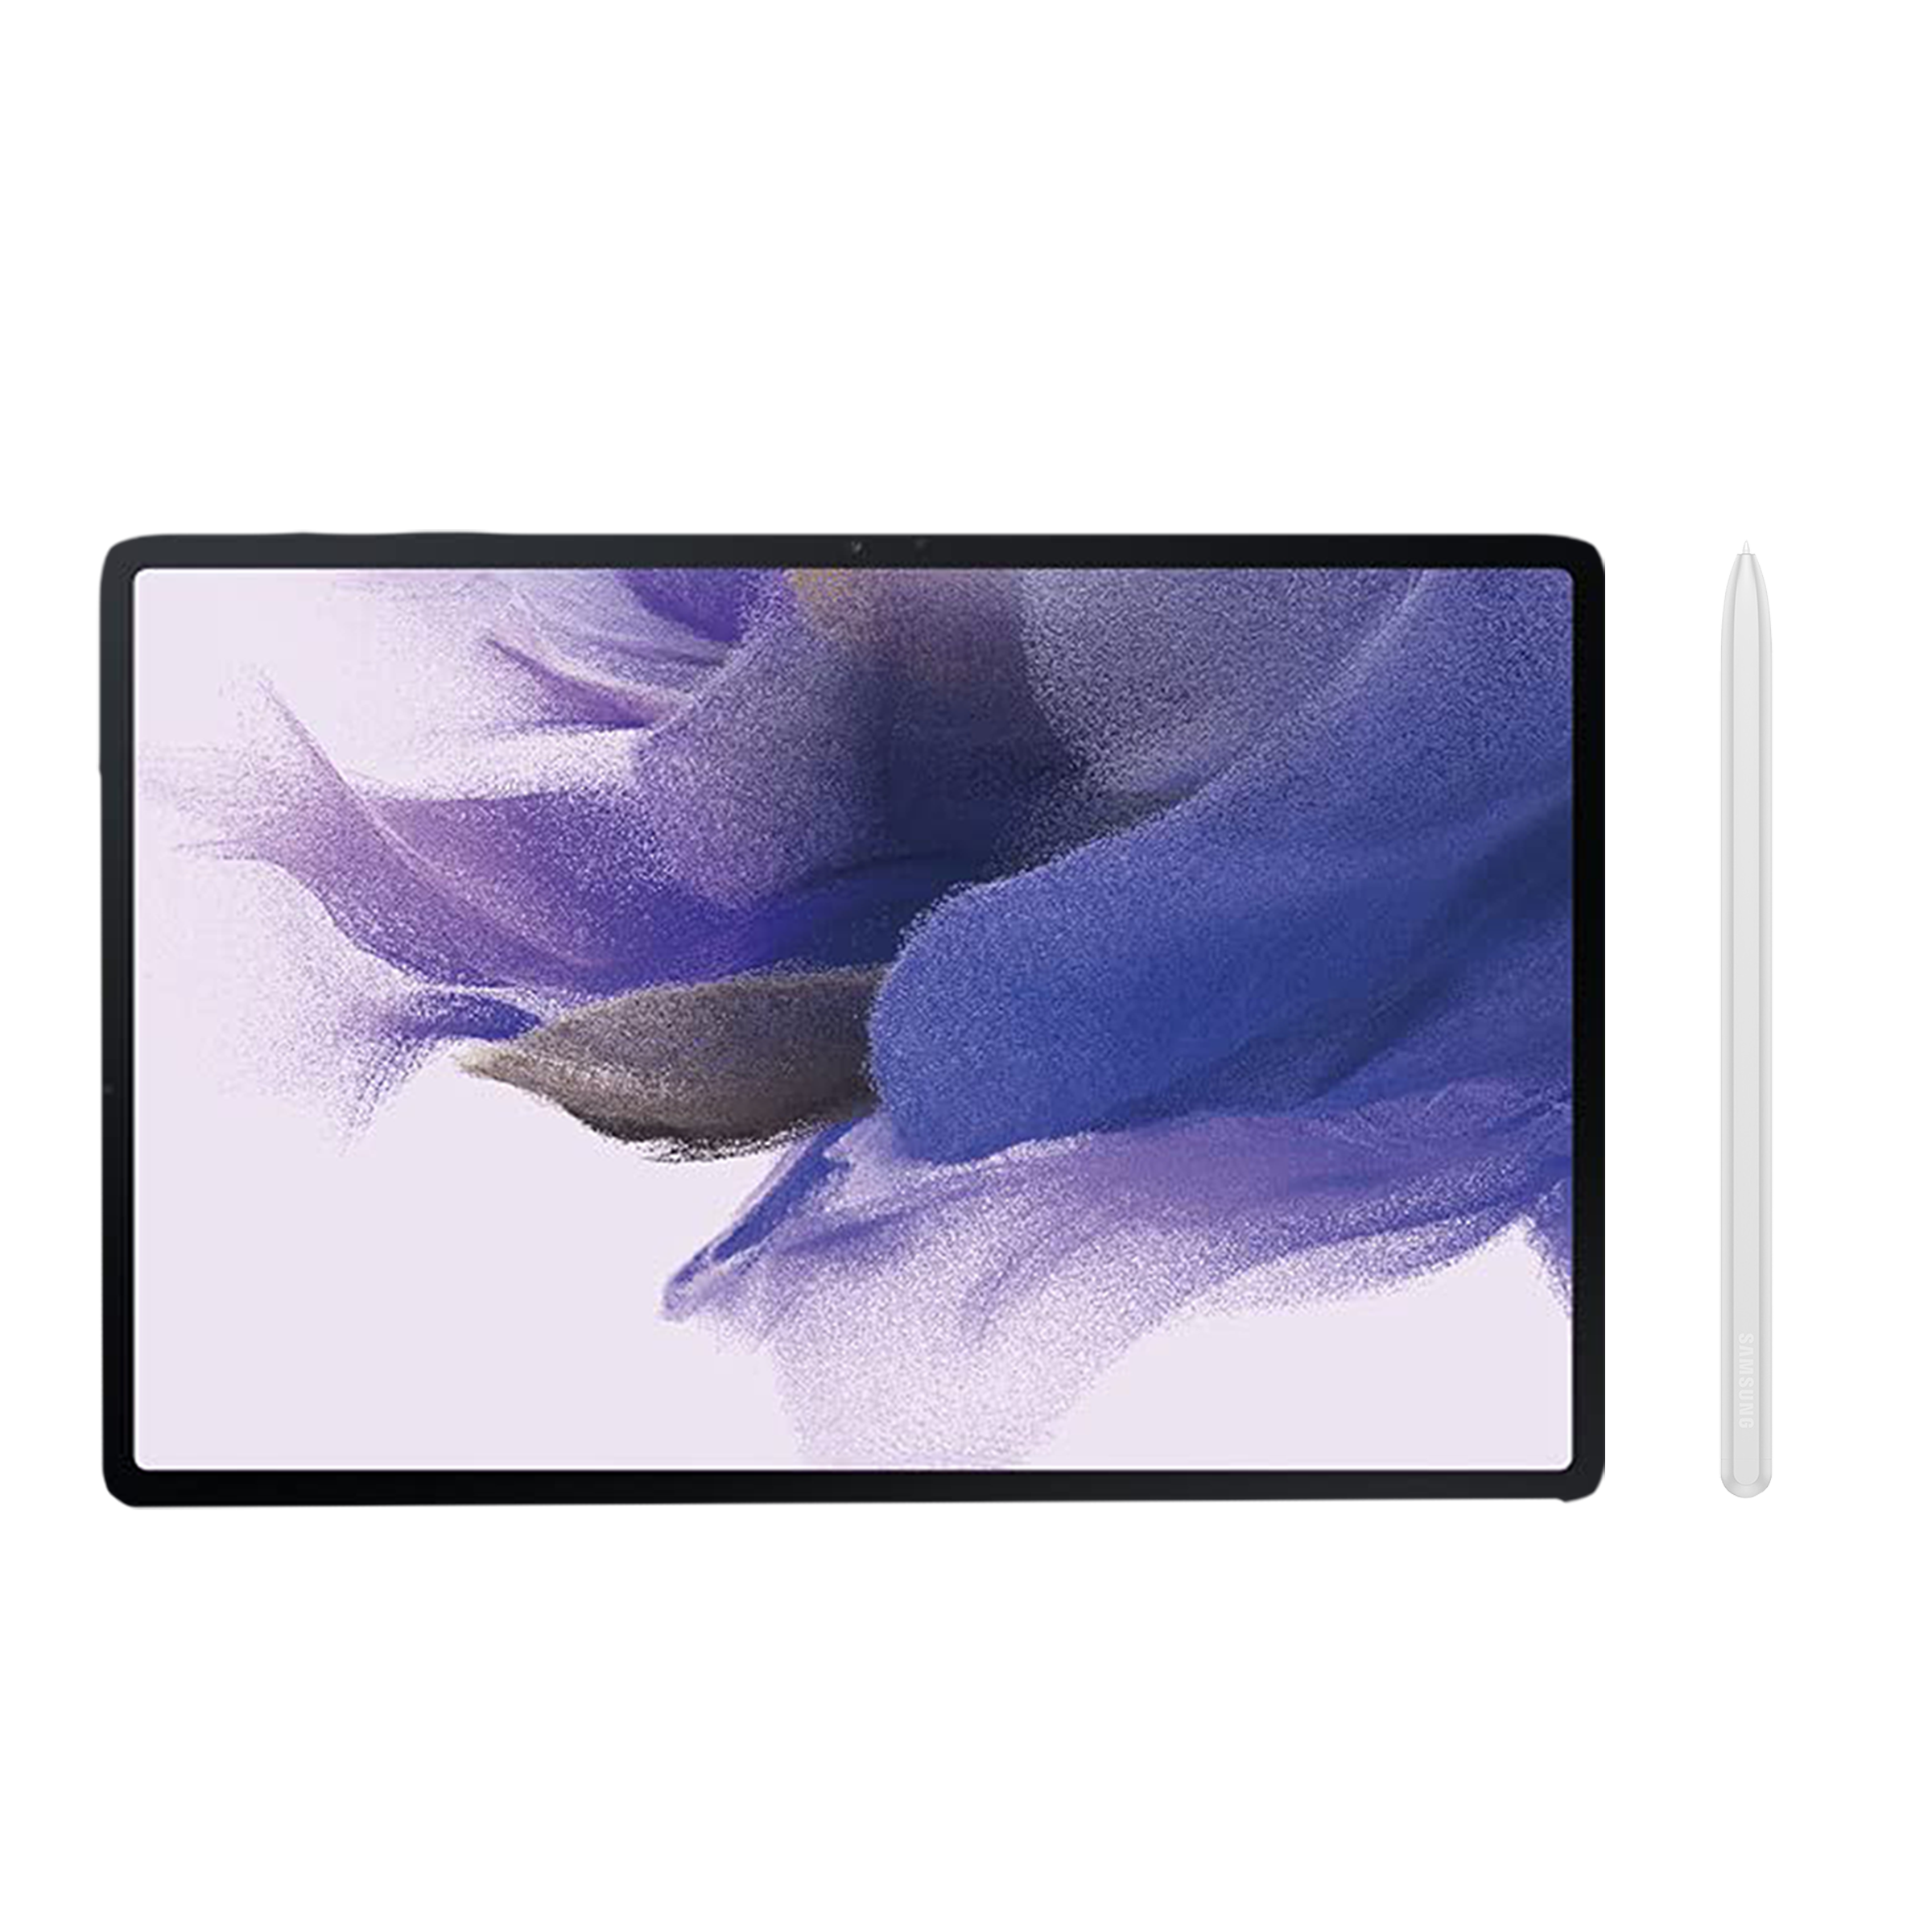 SAMSUNG Galaxy Tab S7 FE Wi-Fi+4G Android Tablet (12.4 Inch, 4GB RAM, 64GB ROM, Mystic Silver)